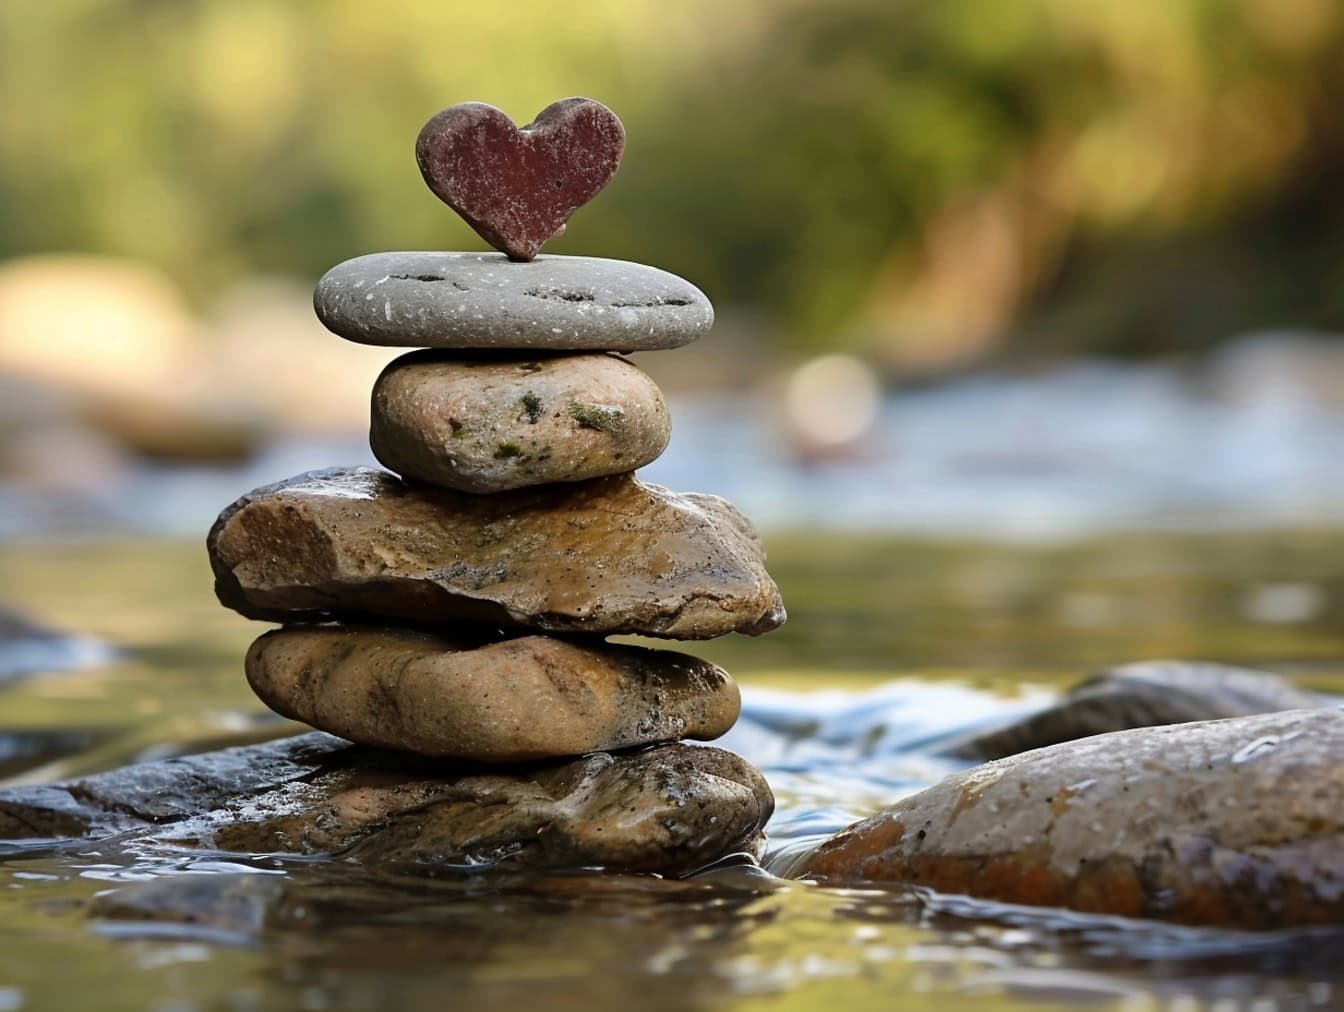 Naskladané kamene na seba na brehu rieky s kameňom v tvare srdca na vrchole, ilustráciou rovnováhy a harmónie v láske